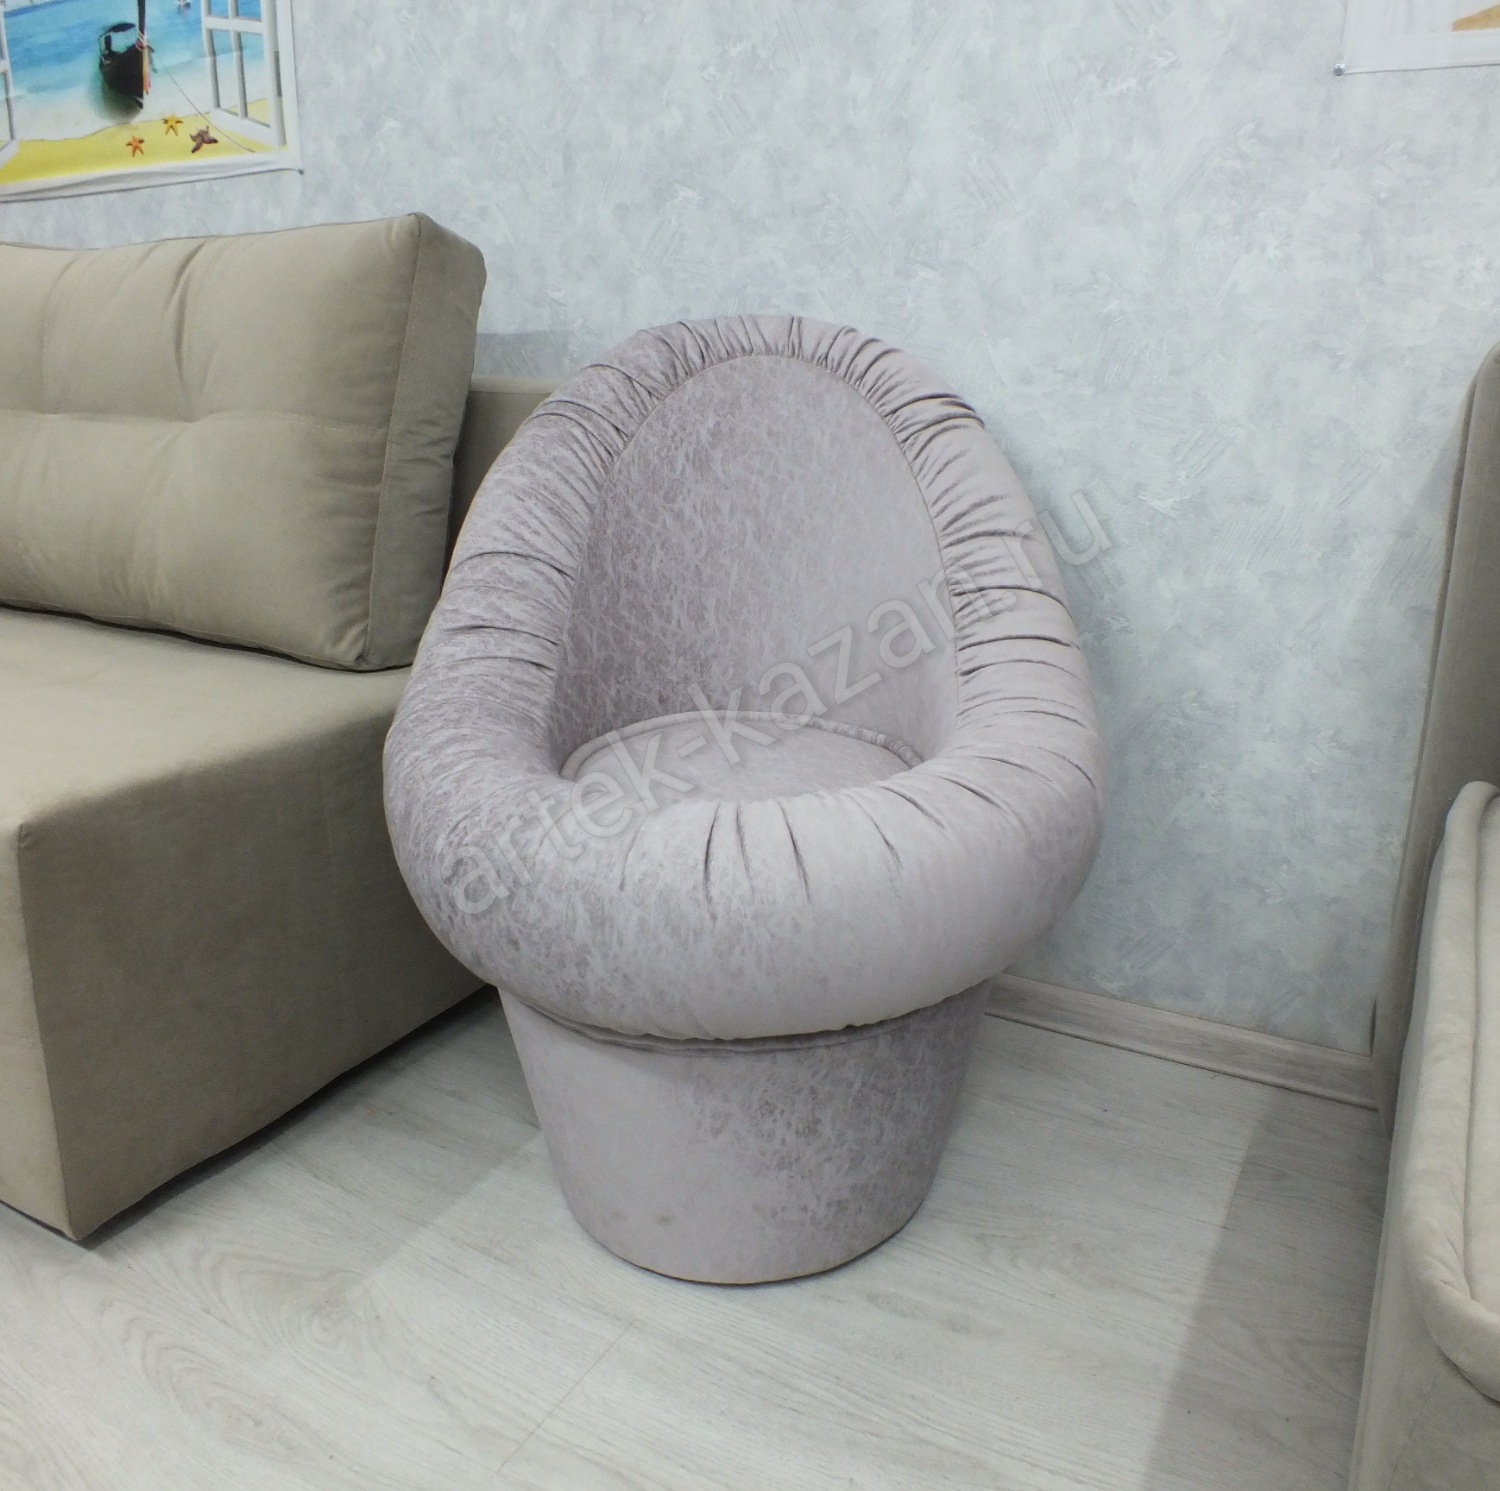 Кресло-пуф, фото 8. Купить недорогой диван по низкой цене от производителя можно у нас.